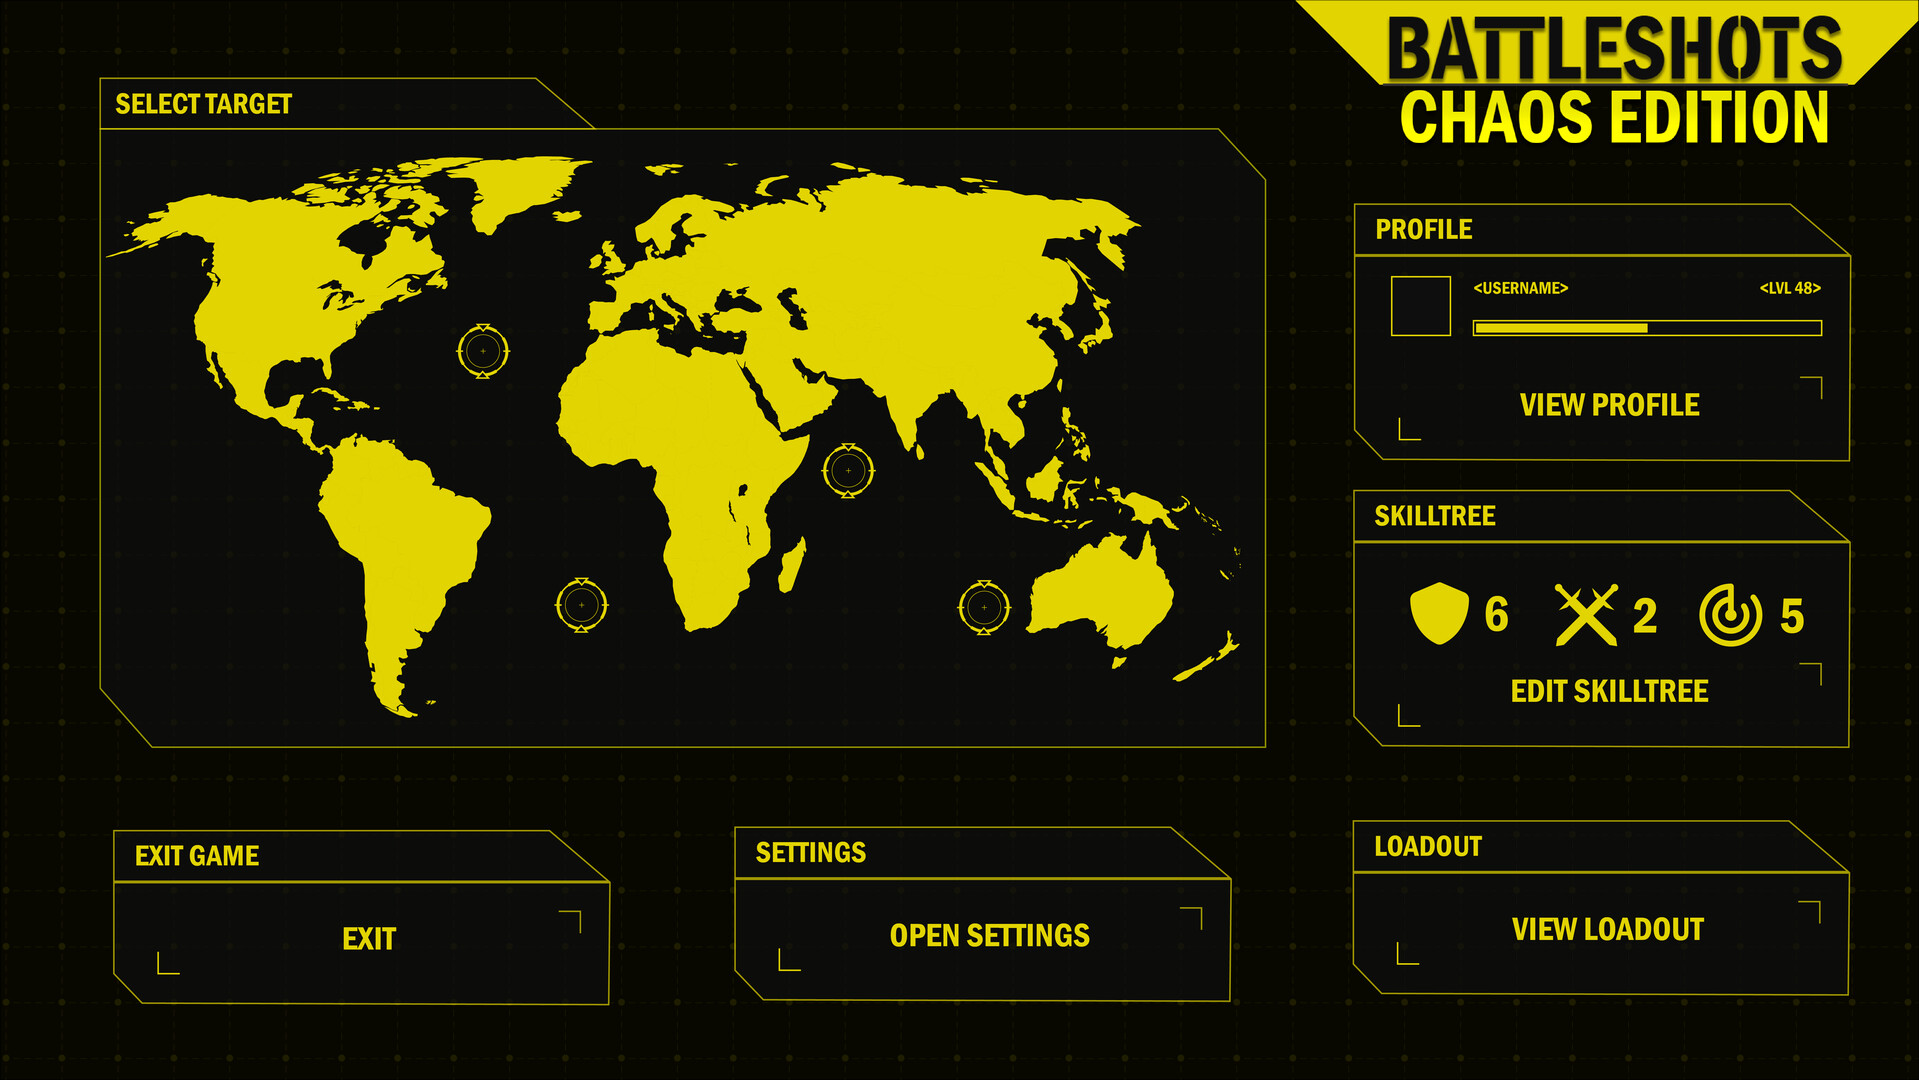 Battleshots: Chaos Edition Featured Screenshot #1